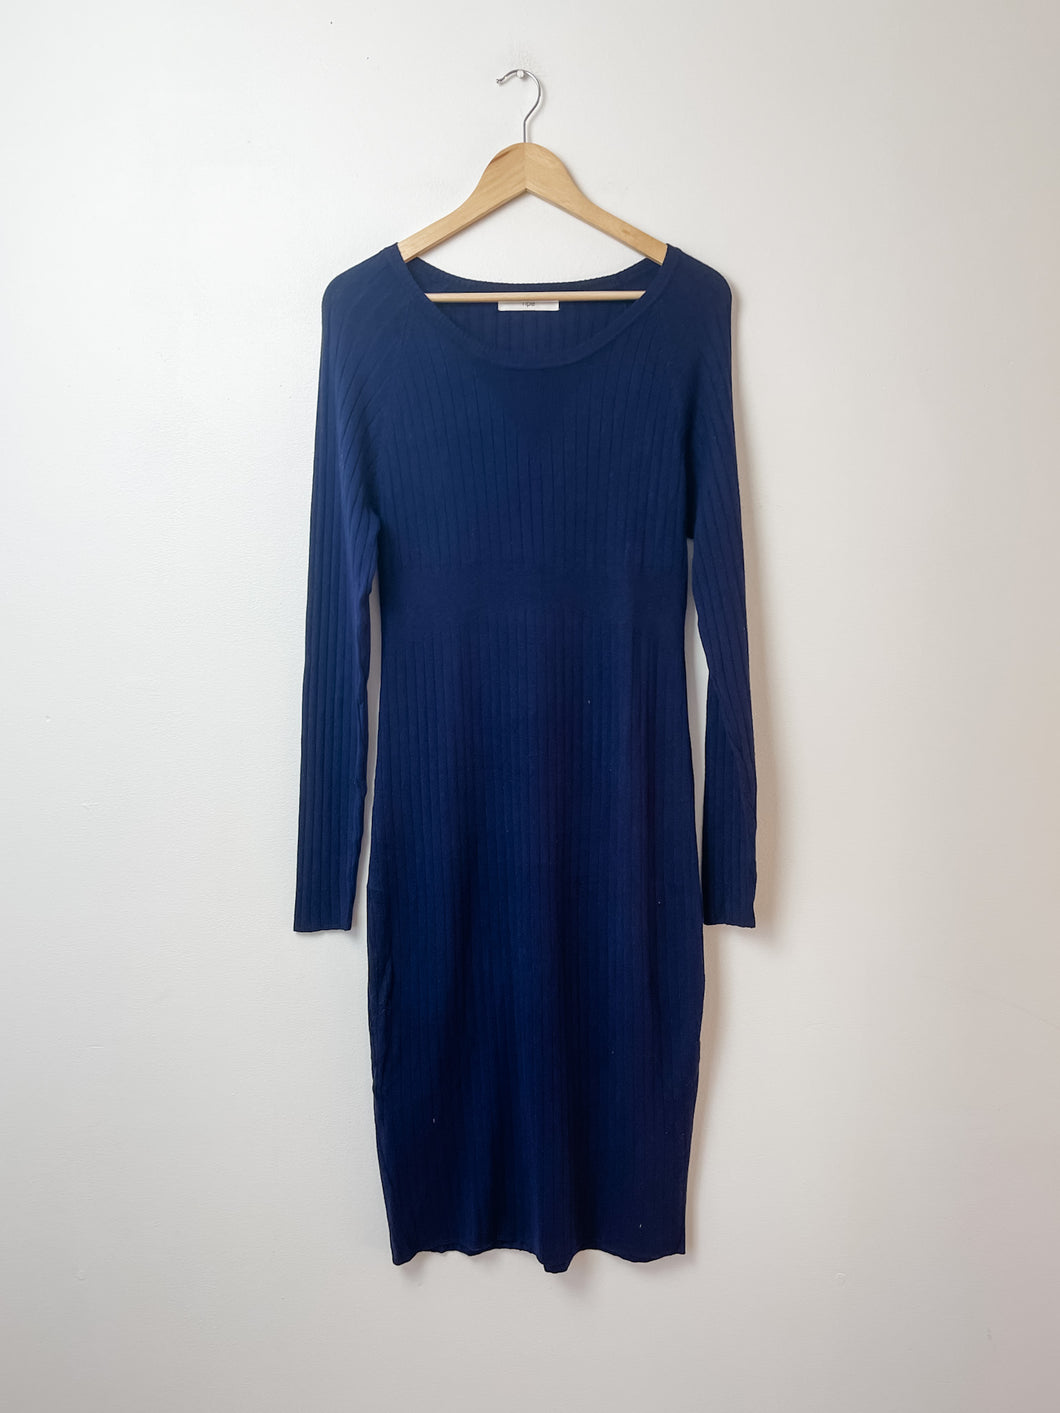 Blue Ripe Maternity Dress Size Small